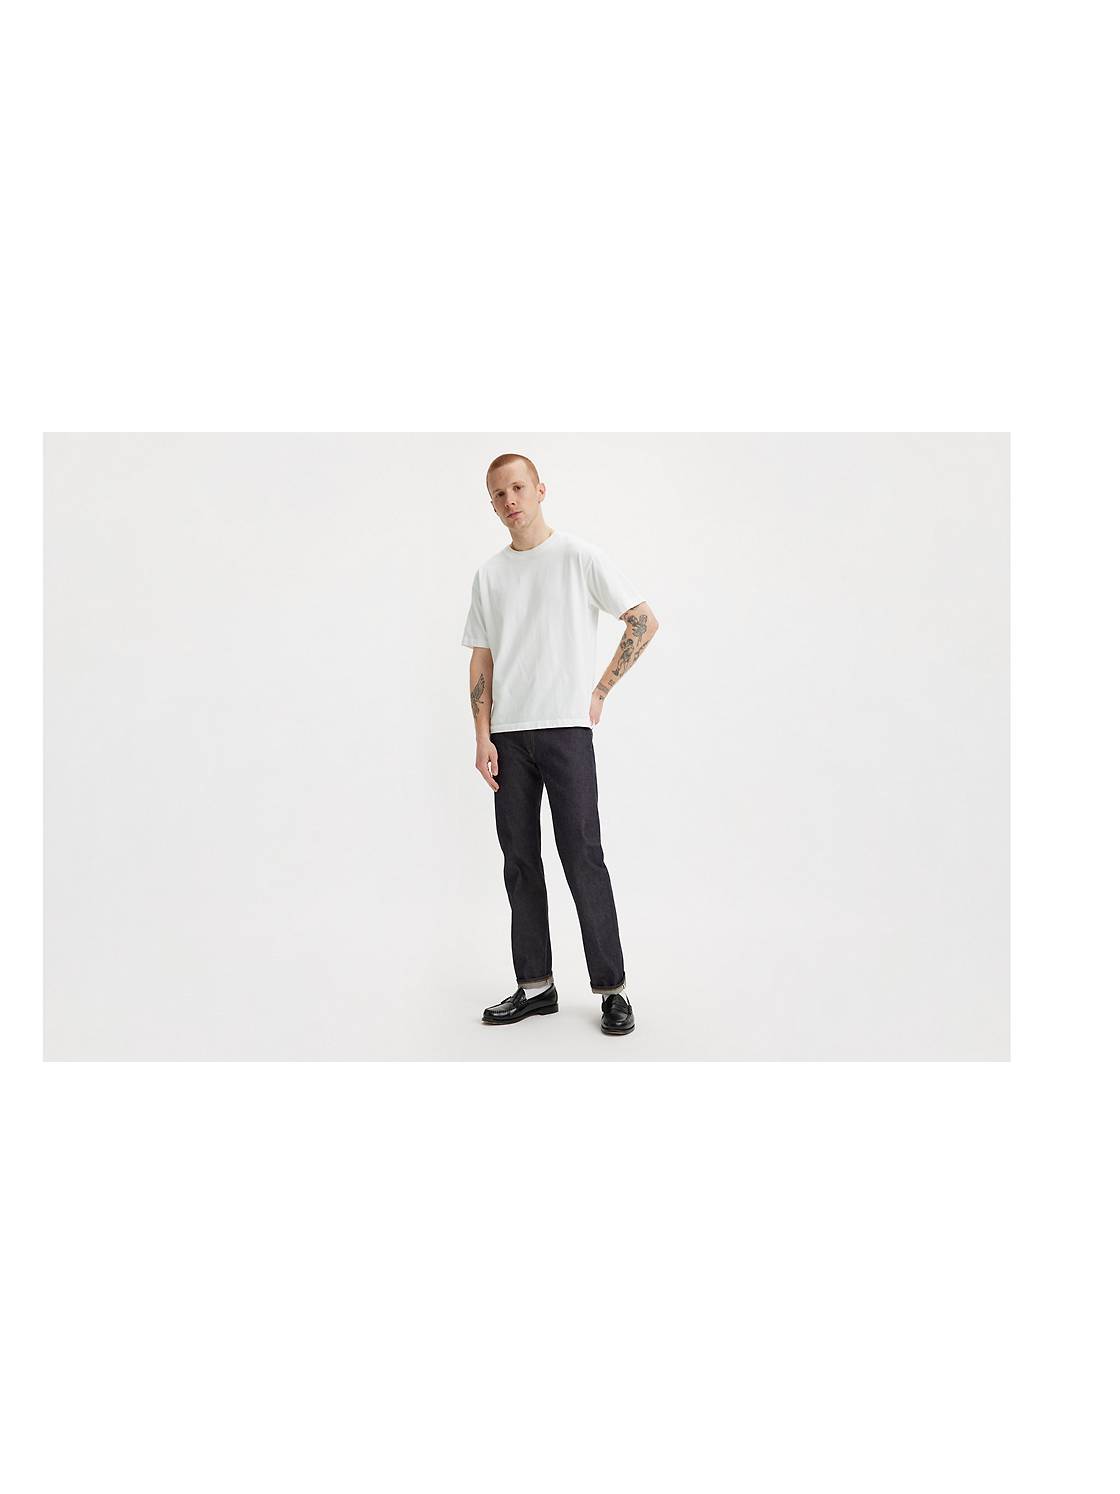 Men's Levi's® 501™ Original-Fit Jeans